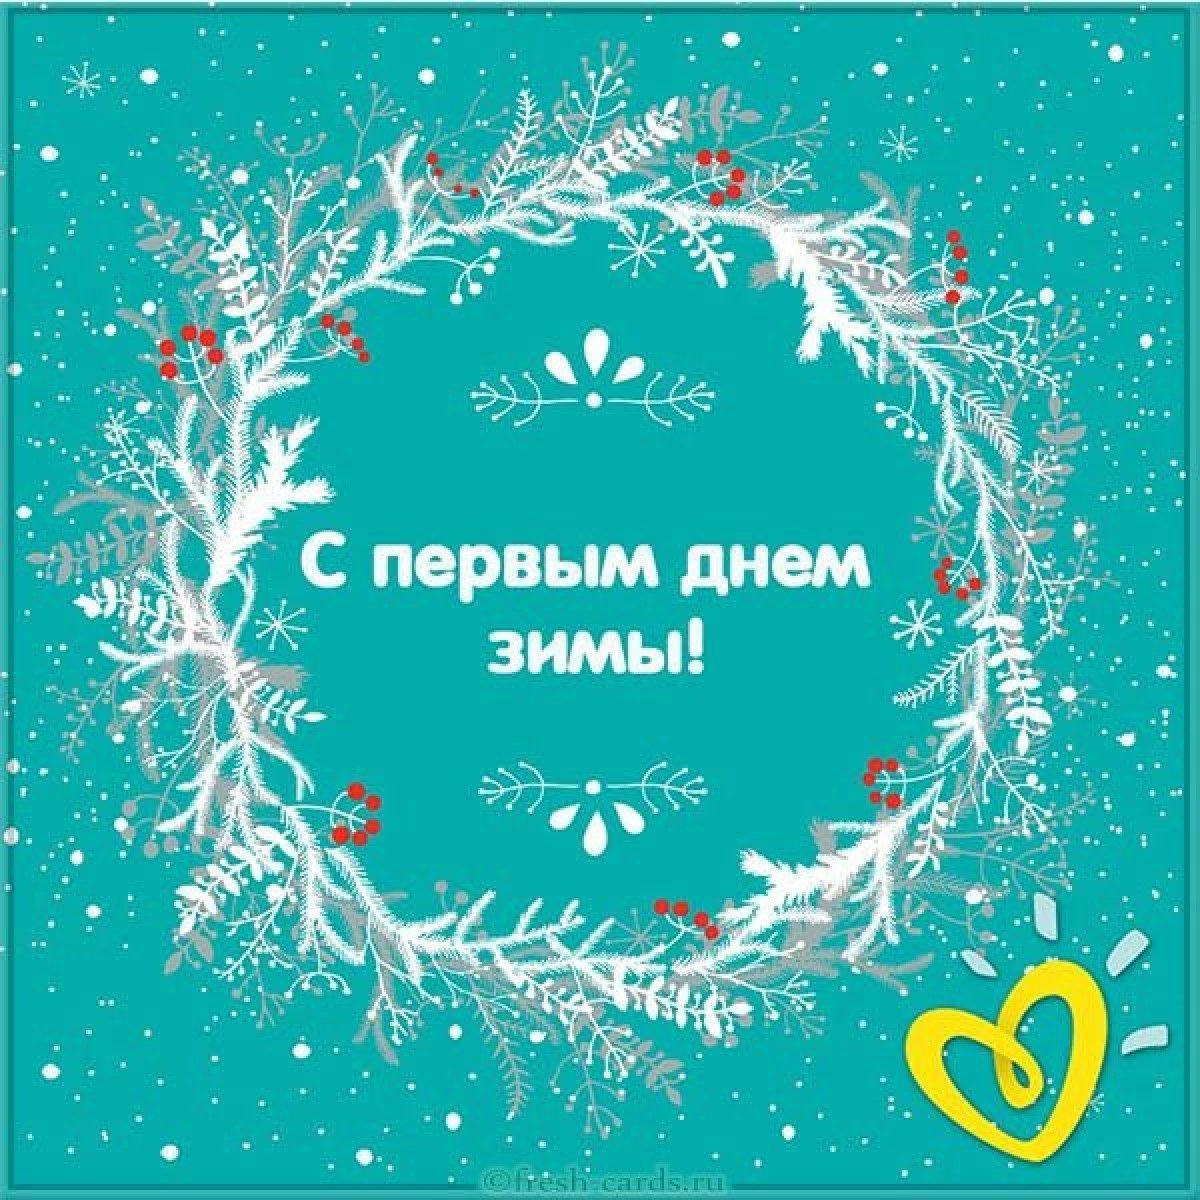 С Первым днем зимы! Хрустальные открытки и теплые слова для россиян 1  декабря | Курьер.Среда | Дзен